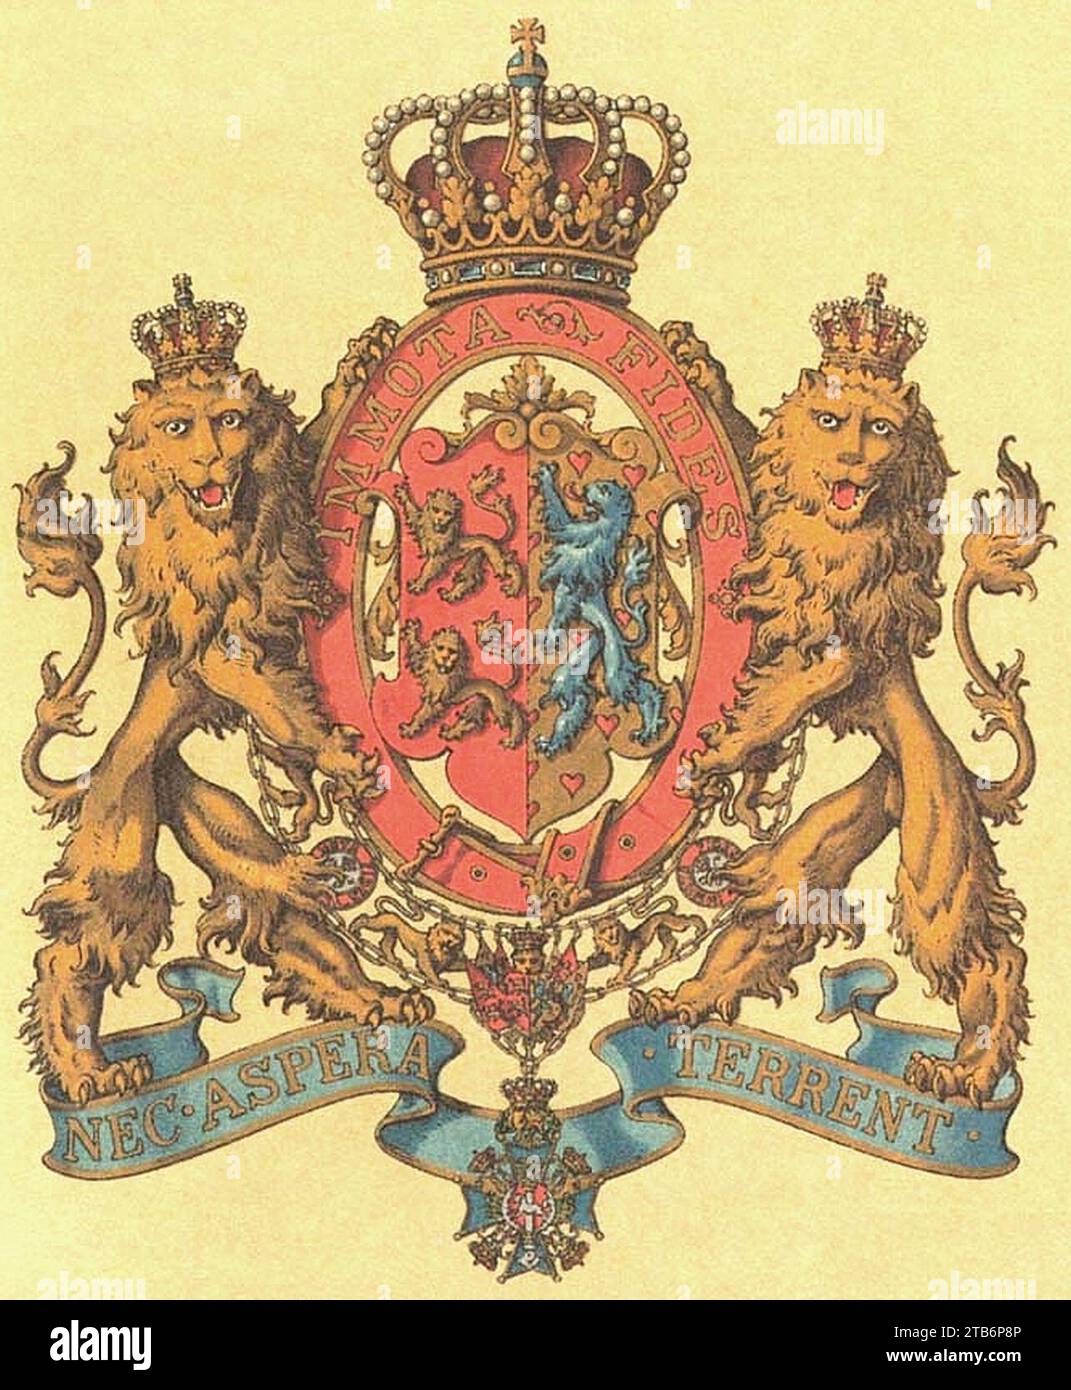 Wappen Deutsches Reich - Herzogtum Braunschweig (Kleines). Stock Photo